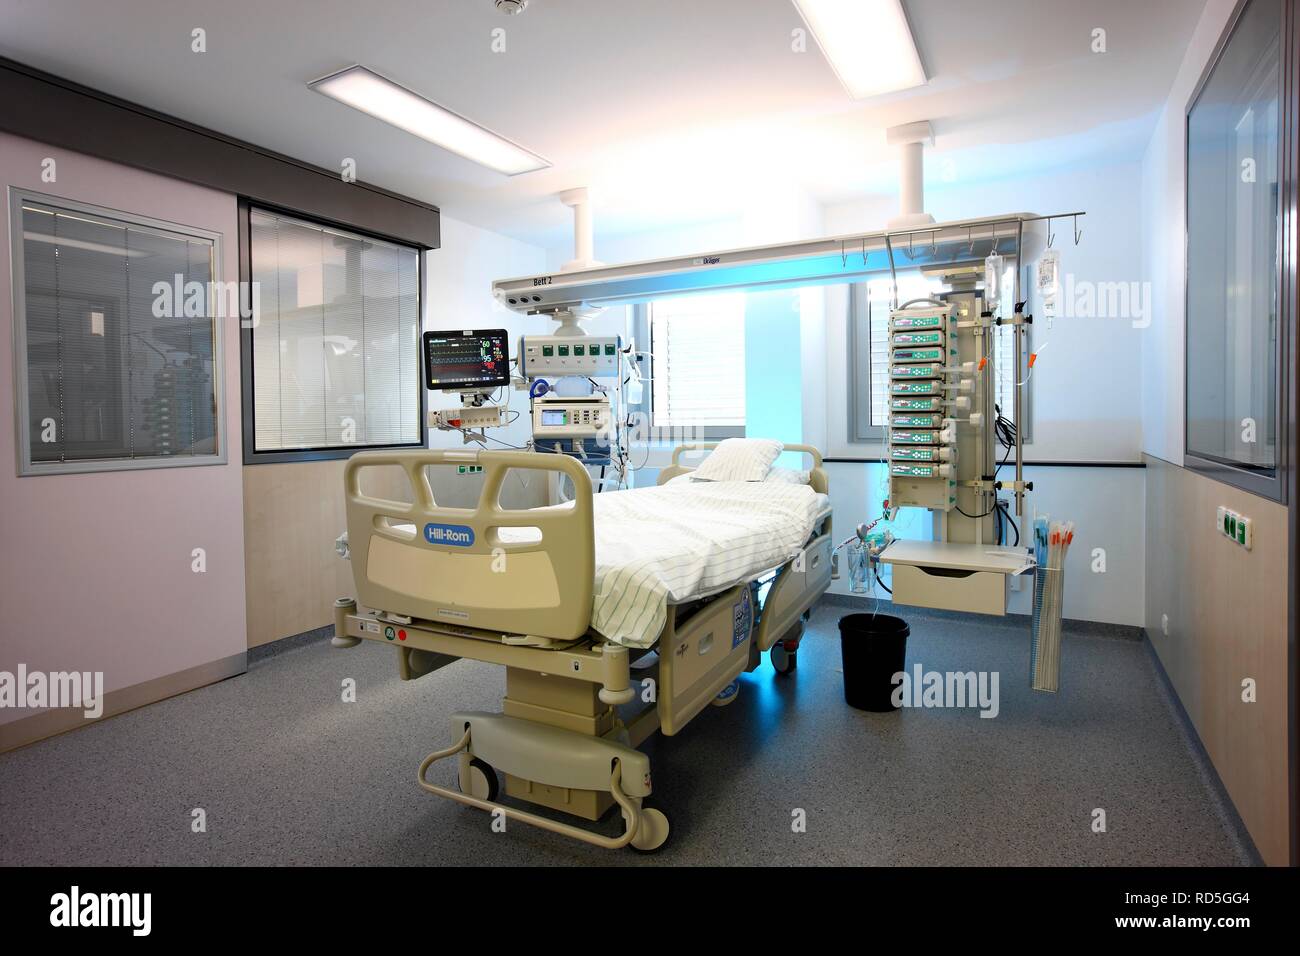 ICU oder Intensivstation, leeres Patientenbett für einen neuen Patienten bereit, medizinische Geräte für die Pflege, Belüftung und Stockfoto